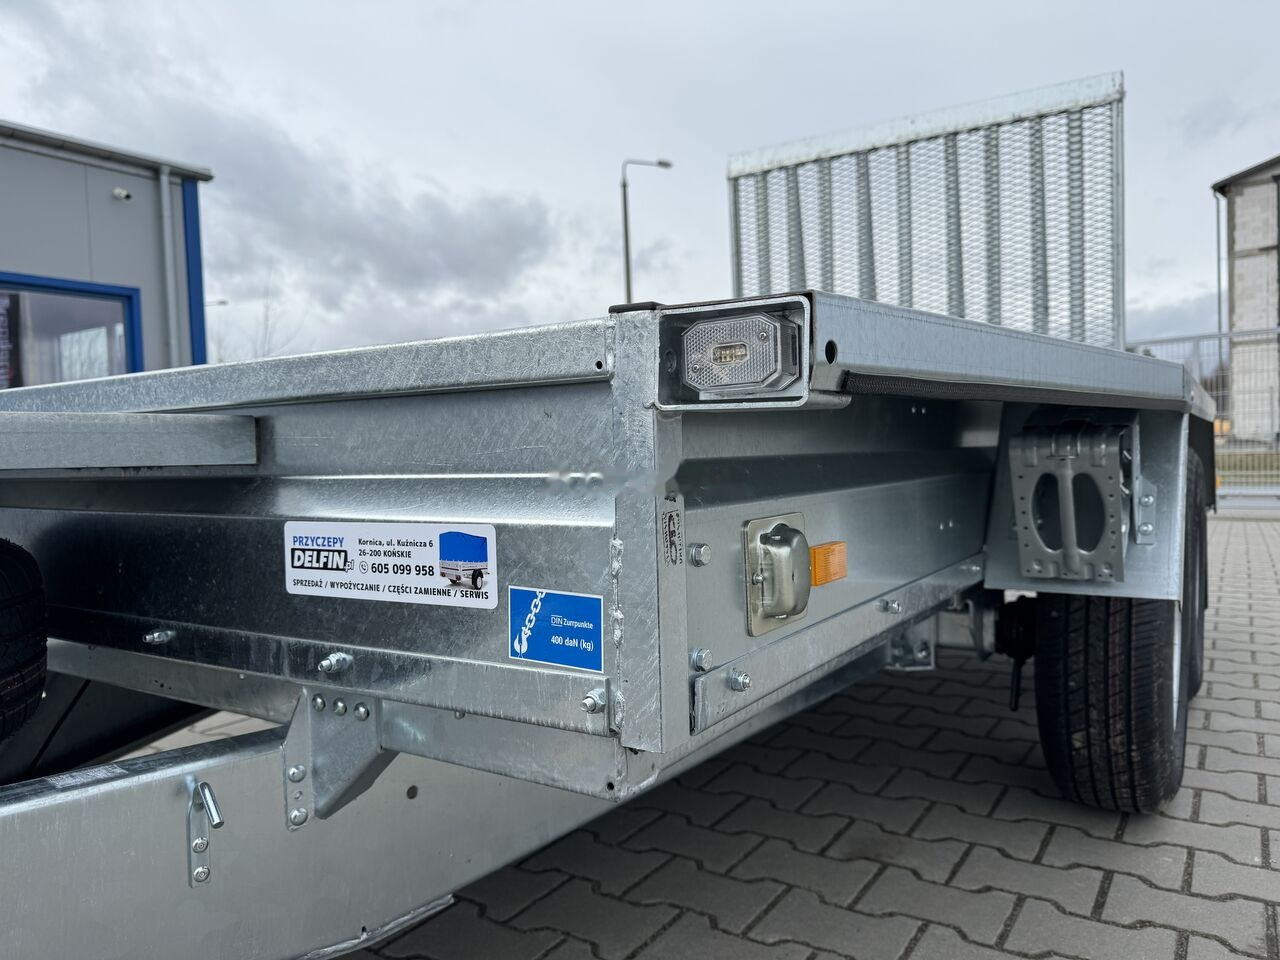 Nowy Przyczepa do transportu maszyn dla transportowania ciężkiego sprzętu Brenderup MT 3080 GVW 2700 kg machine transporter mini excavator: zdjęcie 9